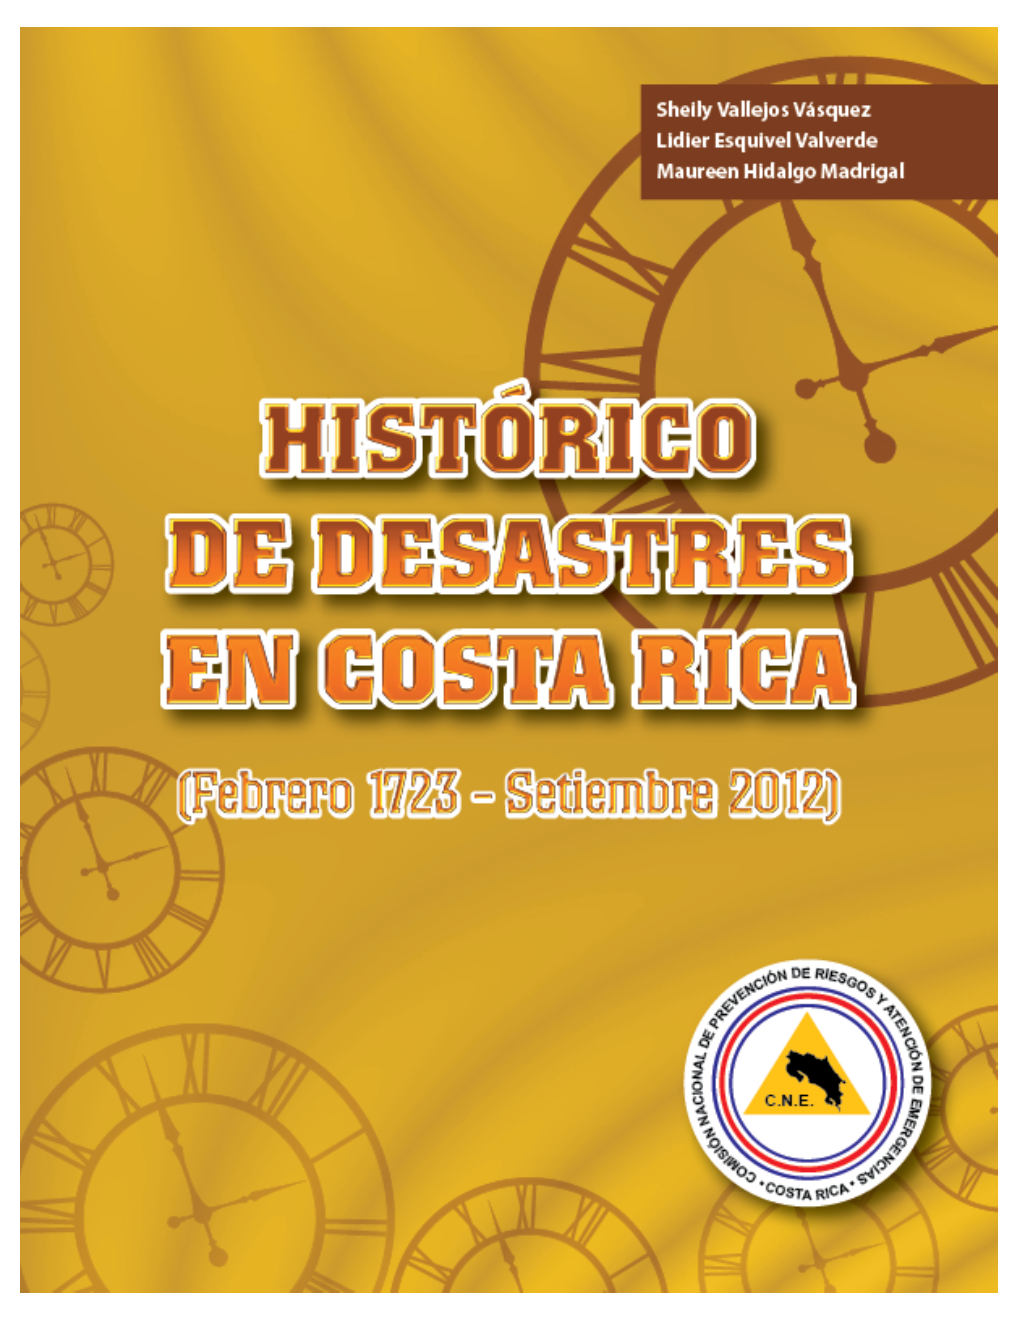 HISTÓRICO DE DESASTRES EN COSTA RICA (Febrero 1723 - Setiembre 2012)